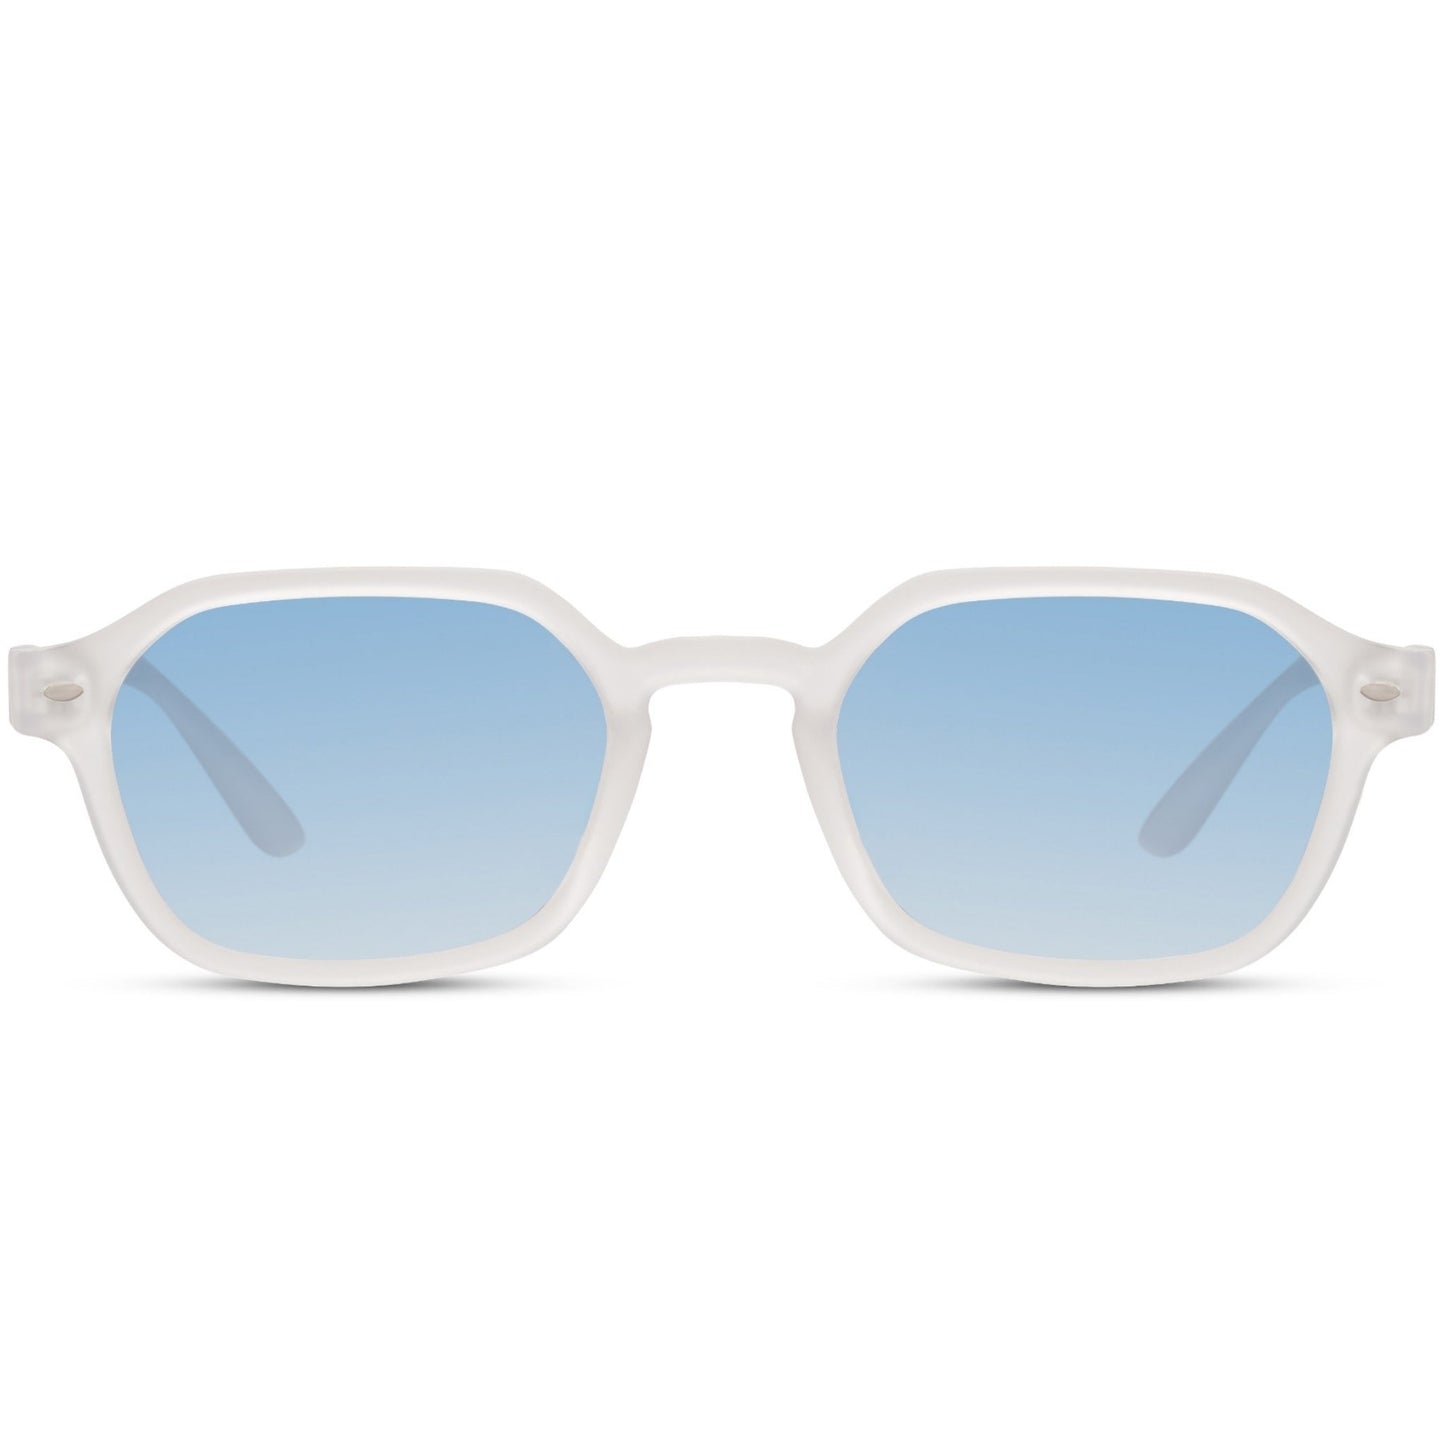 Γυαλιά Ηλίου Roman της Exposure Sunglasses με προστασία UV400 σε άσπρο χρώμα σκελετού και μπλε φακό.